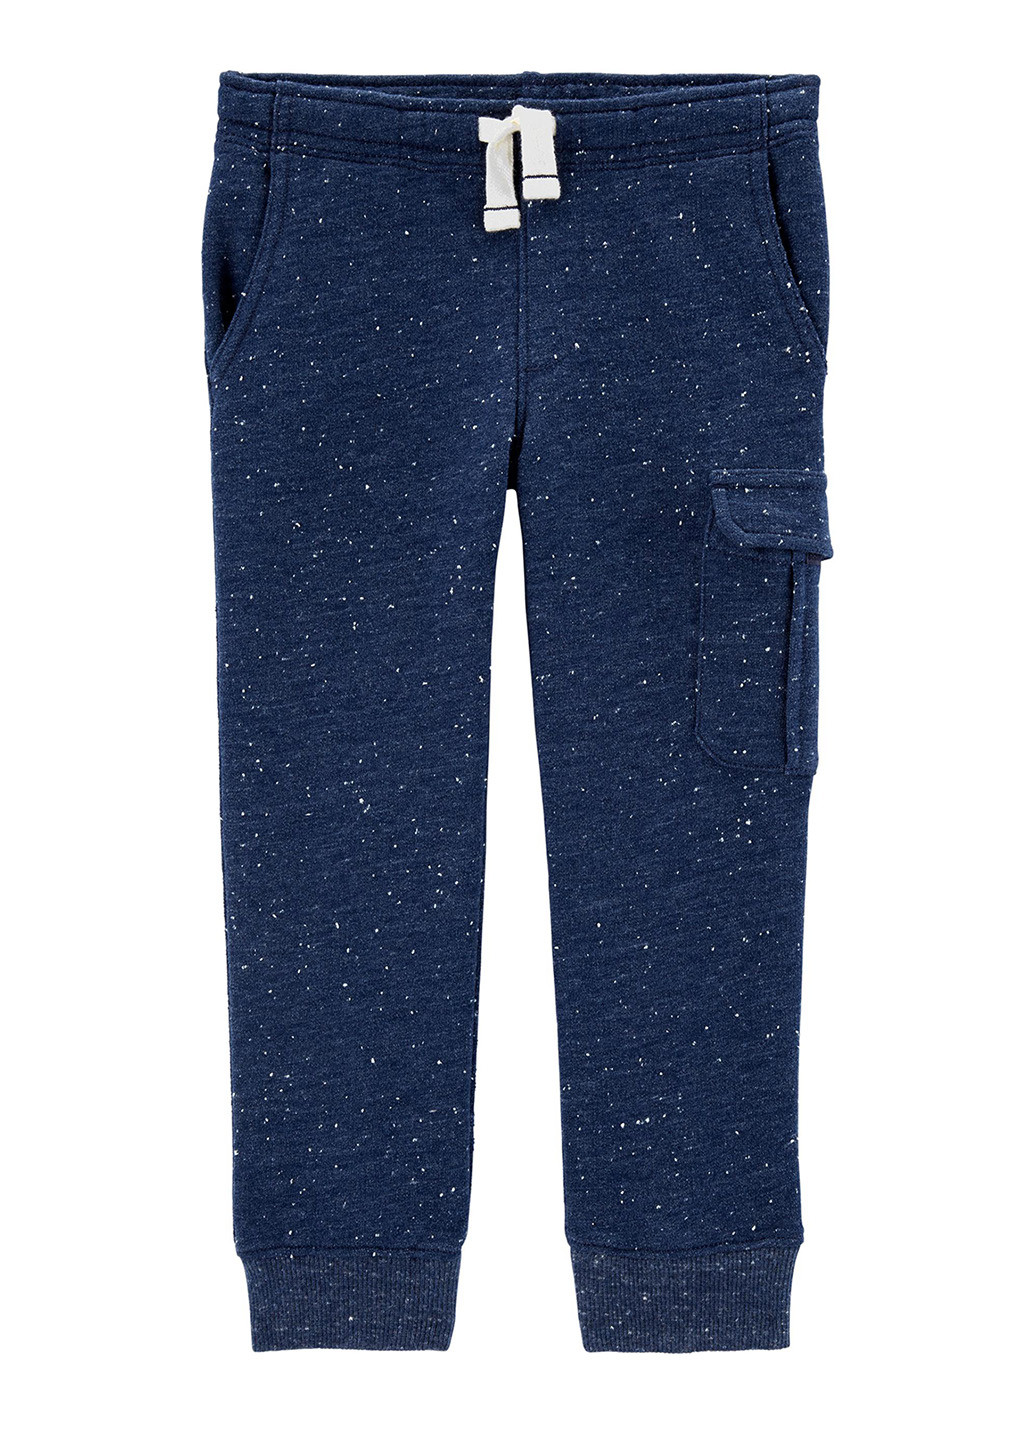 Темно-синие спортивные демисезонные брюки джоггеры Carter's